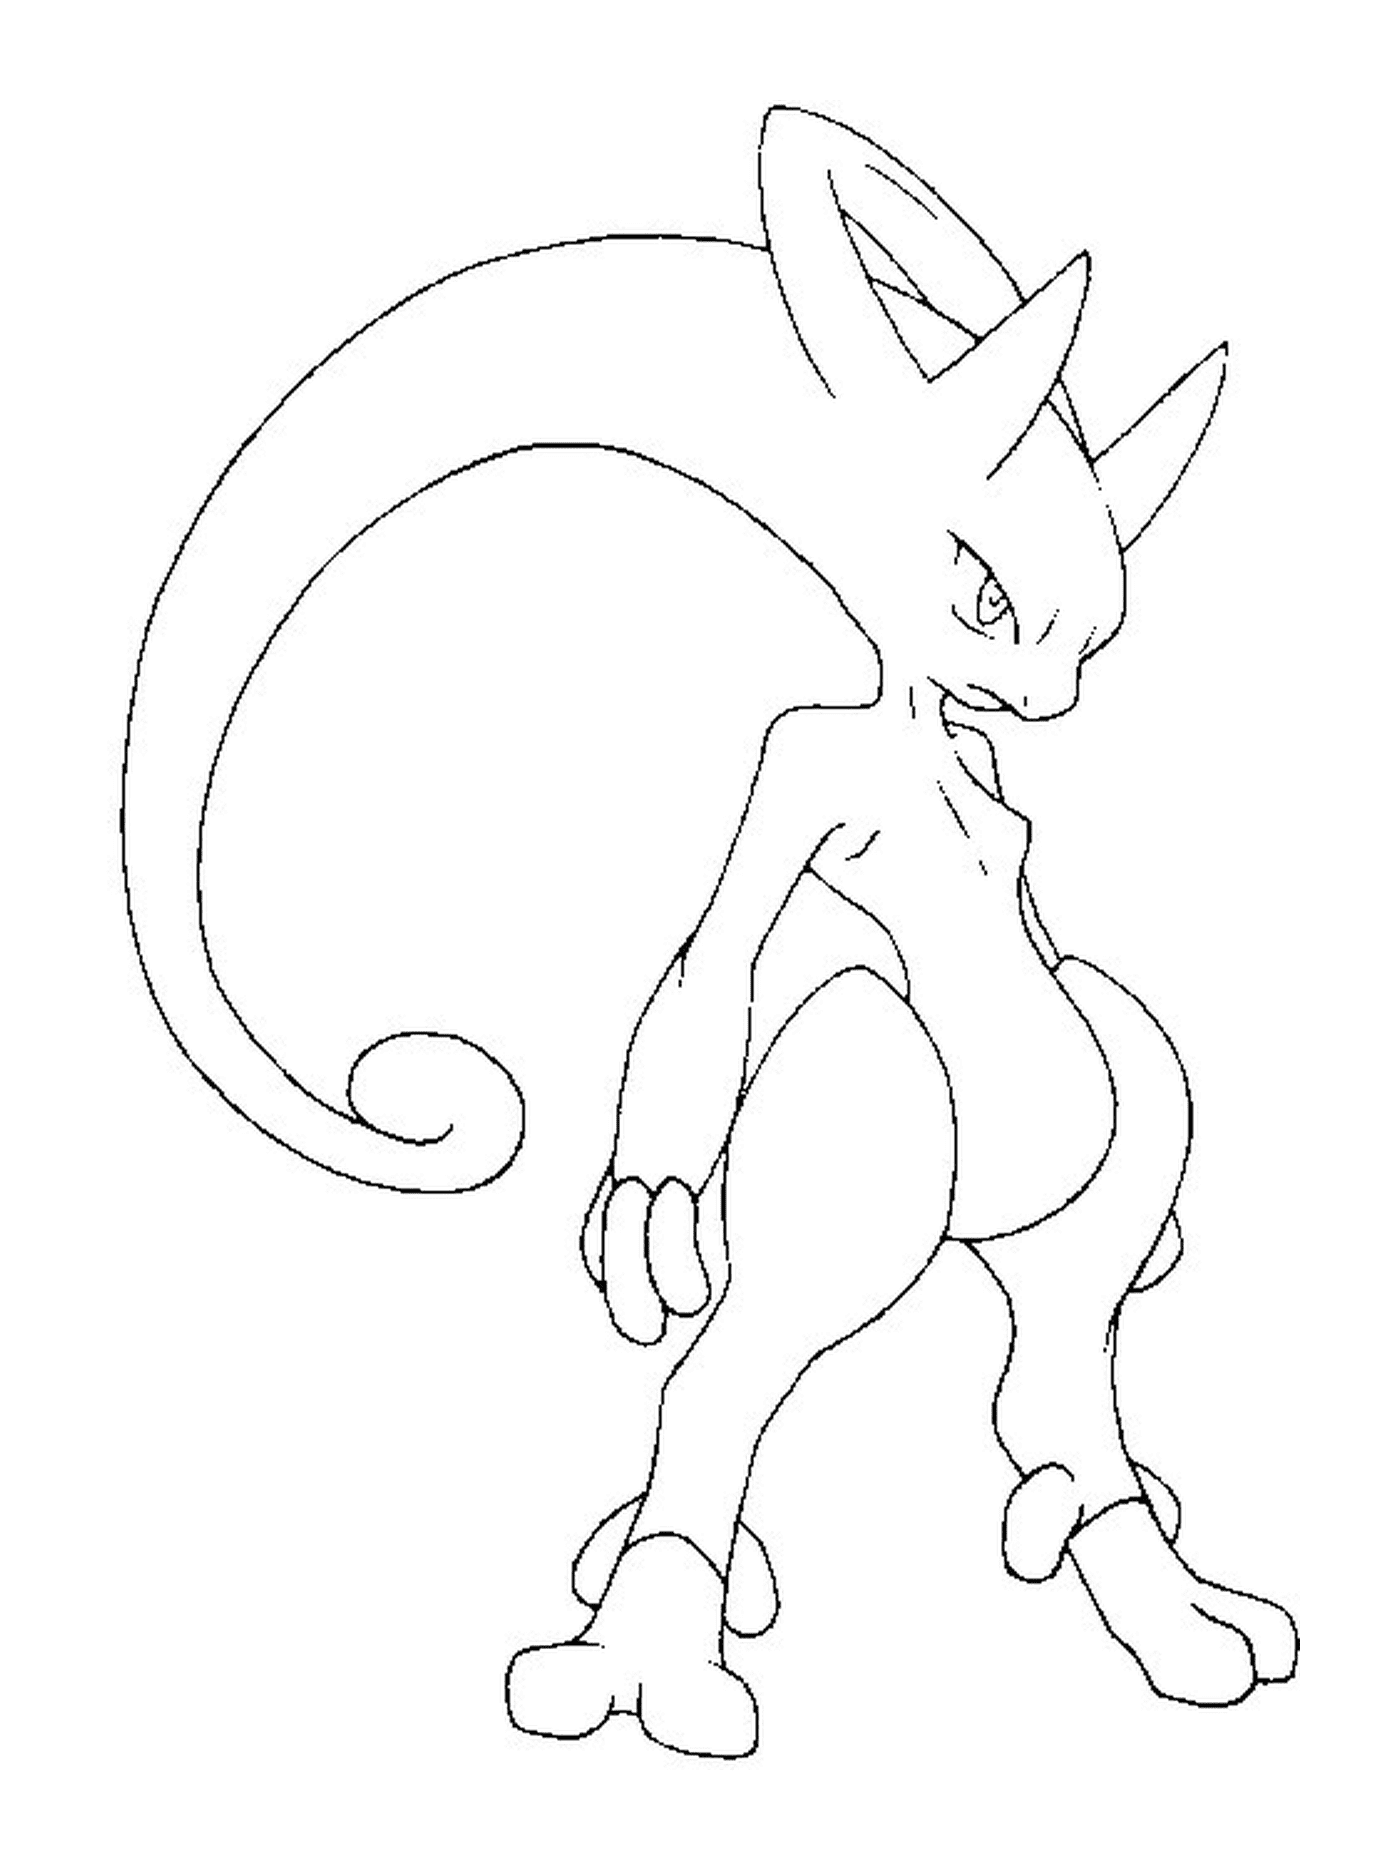  Mewtwo Y, a black and white Pokémon 